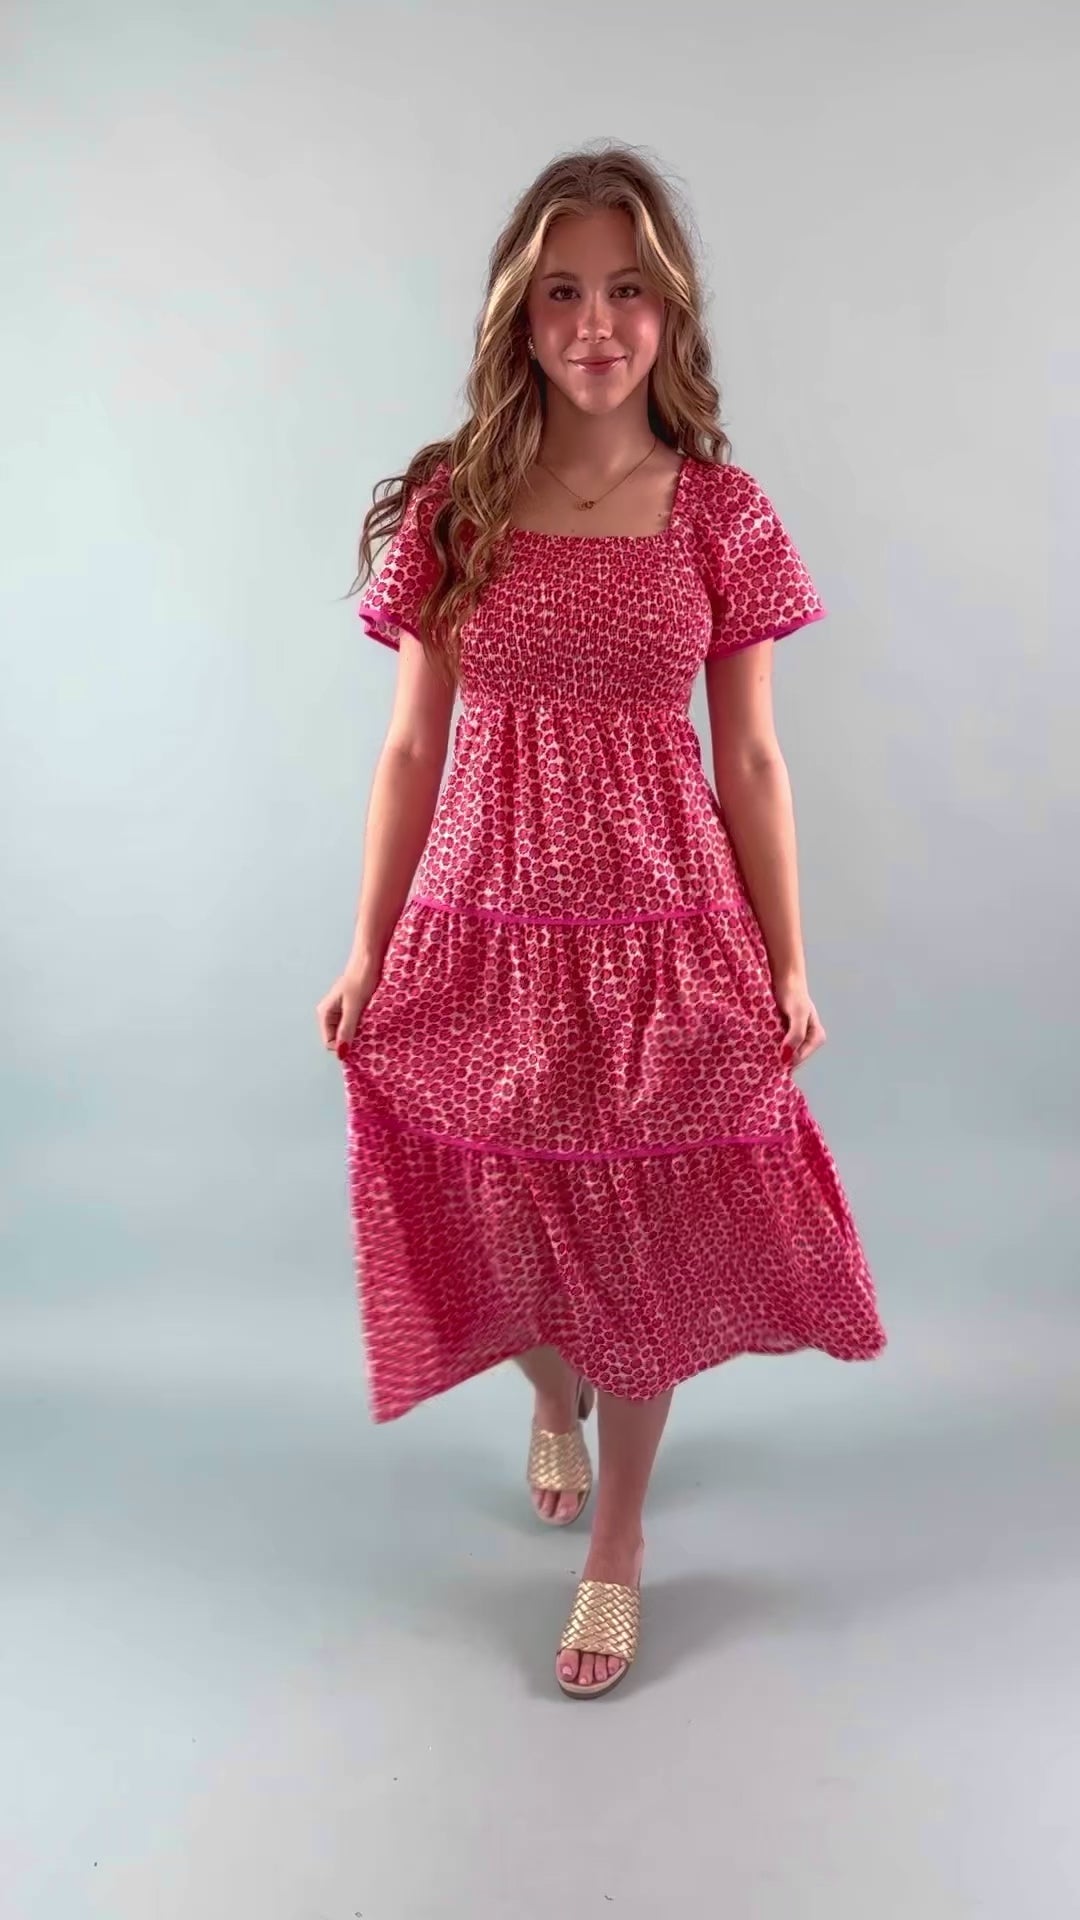 RESTOCK: A Little Bit Of Love Midi Dress